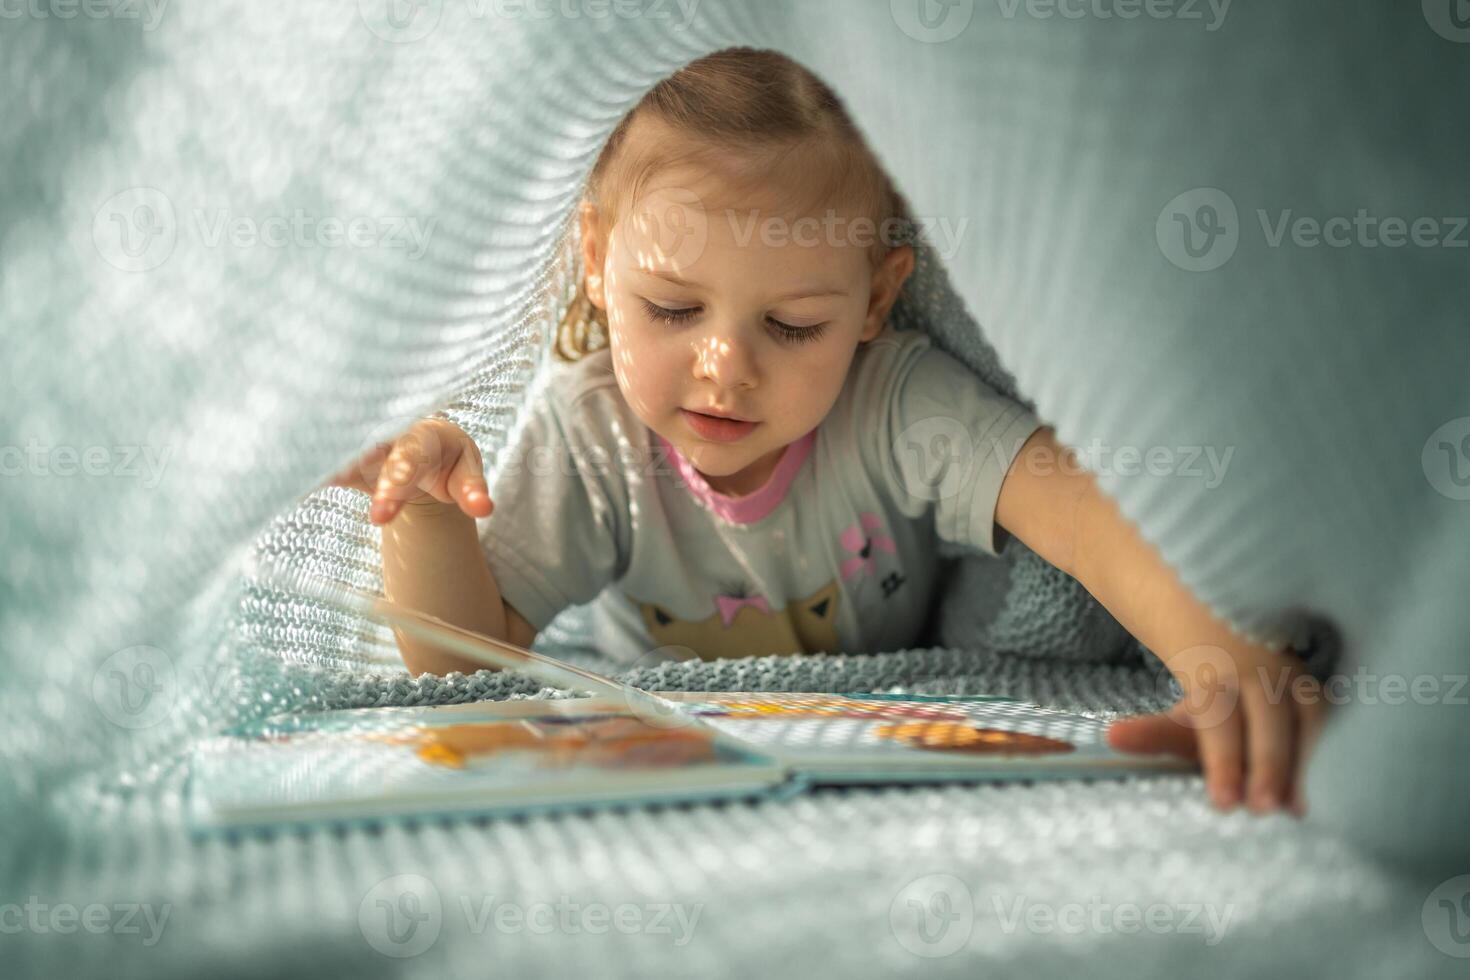 weinig meisje genieten van van recensie een boek onder blauw gebreid plaid in zonnig ochtend- foto